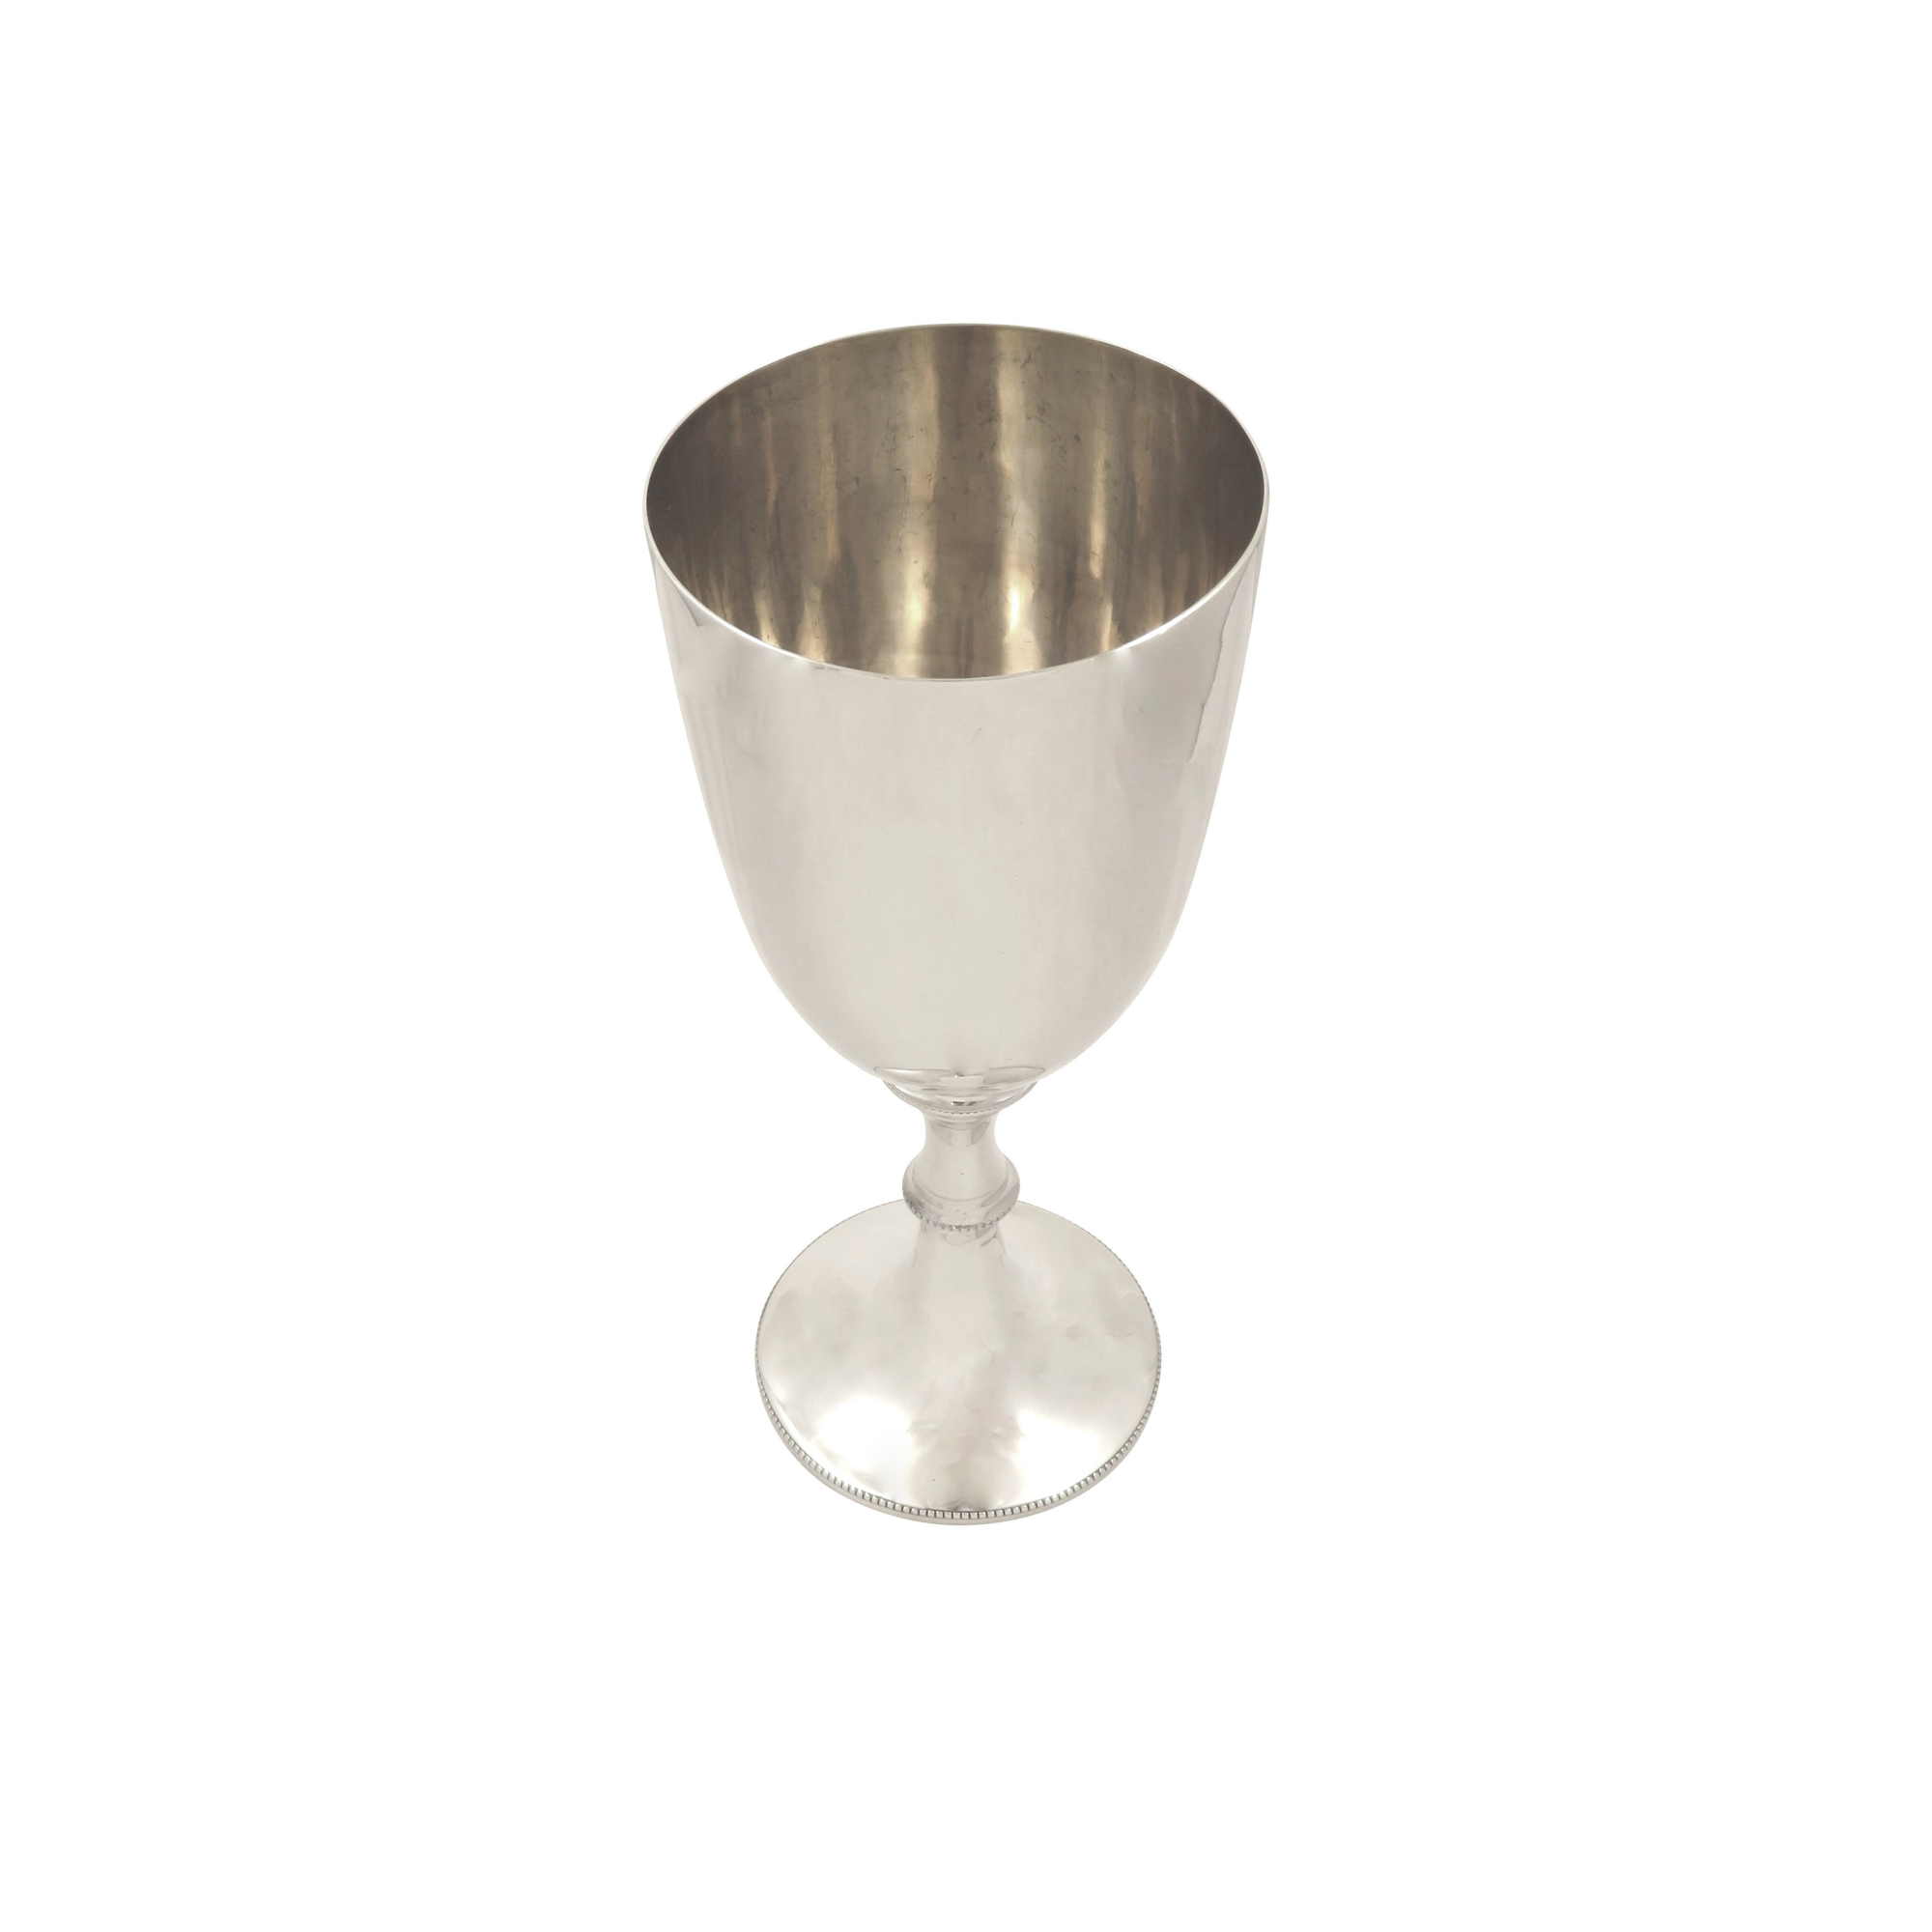 Antique Sterling Silver 9 3/4" Wine Goblet 1911